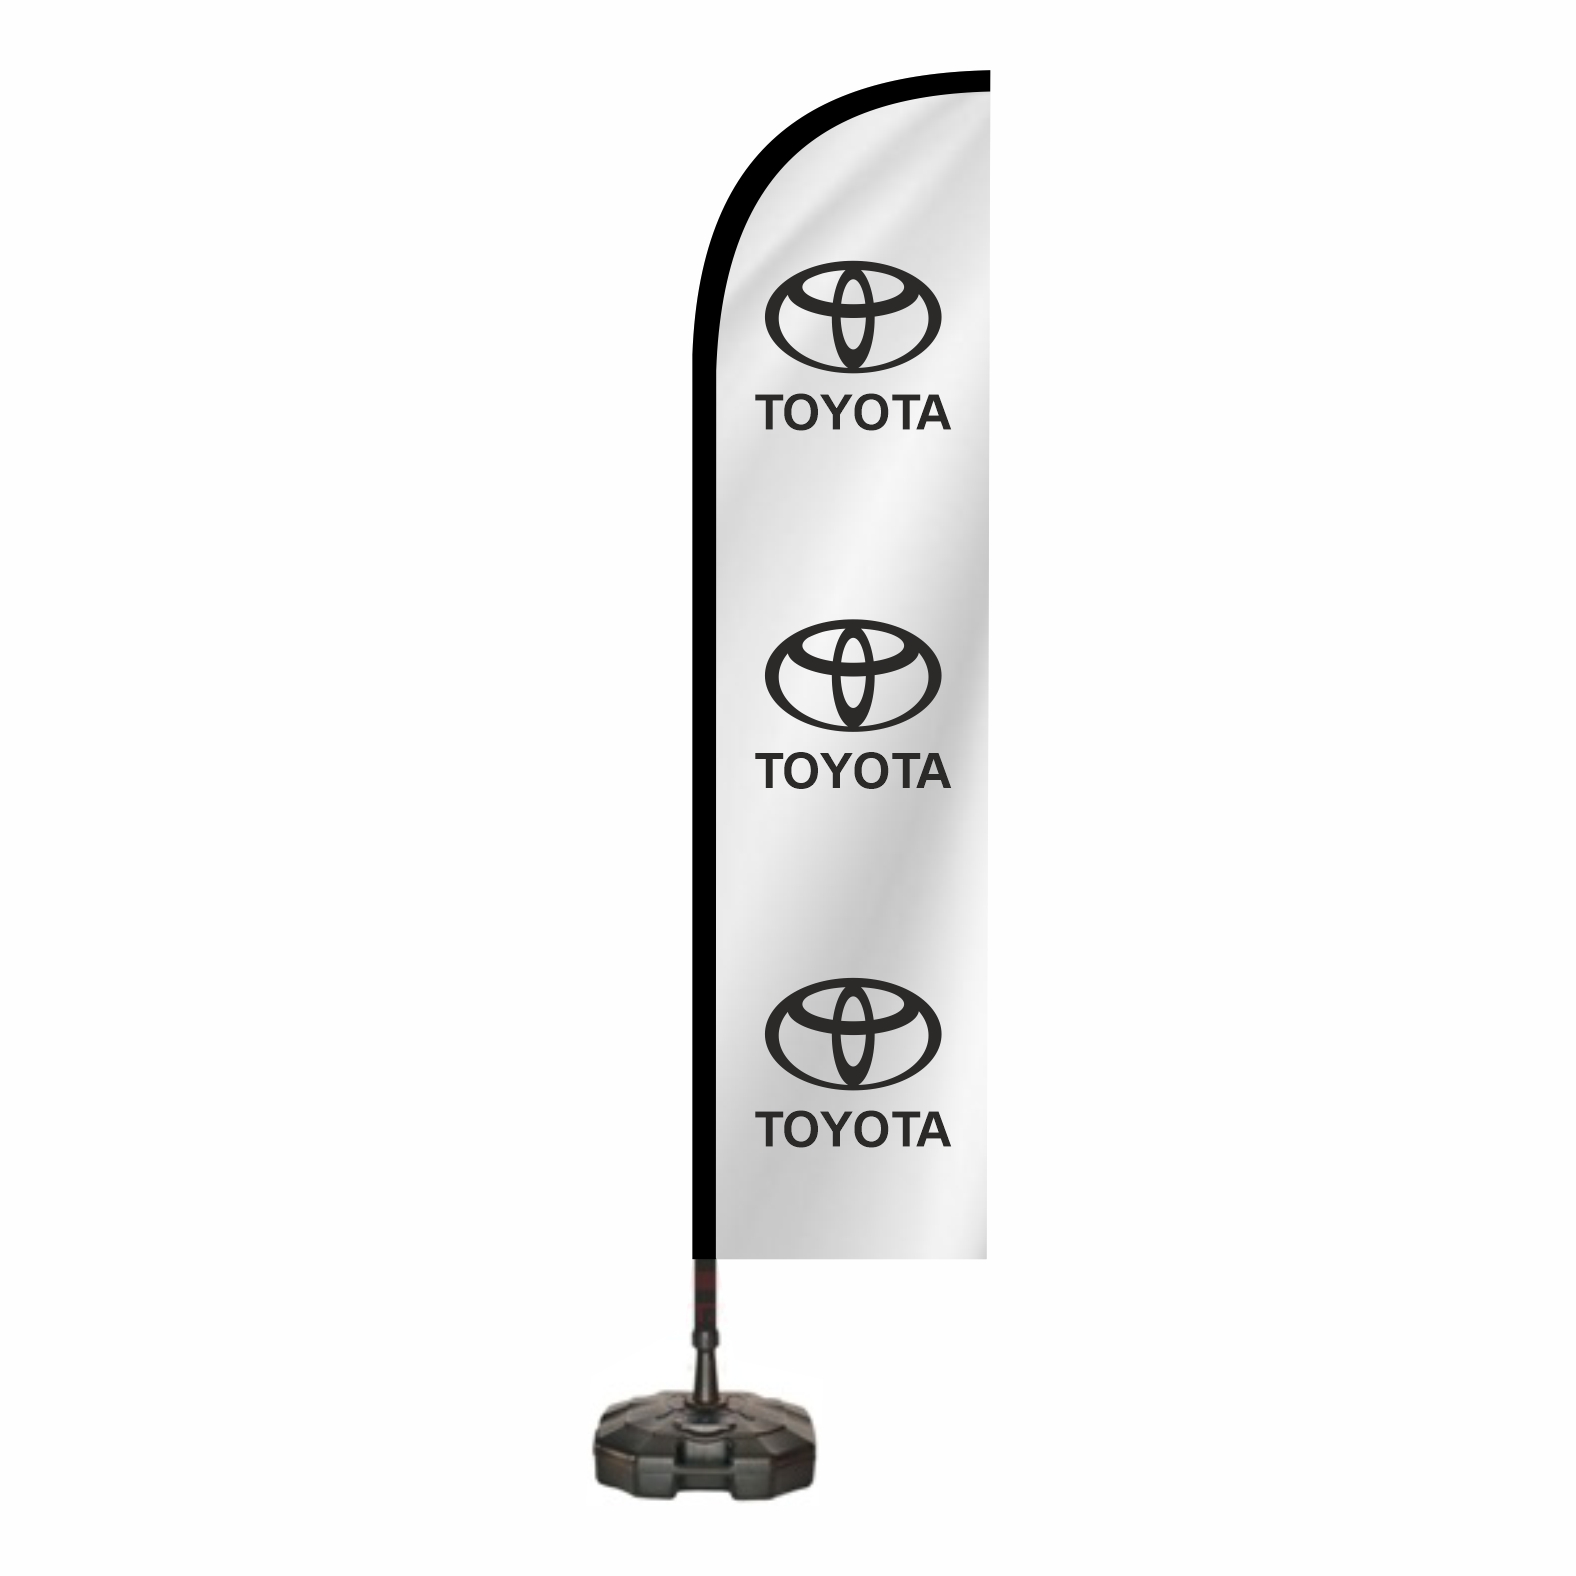 Toyota Cadde Bayra Yapan Firmalar